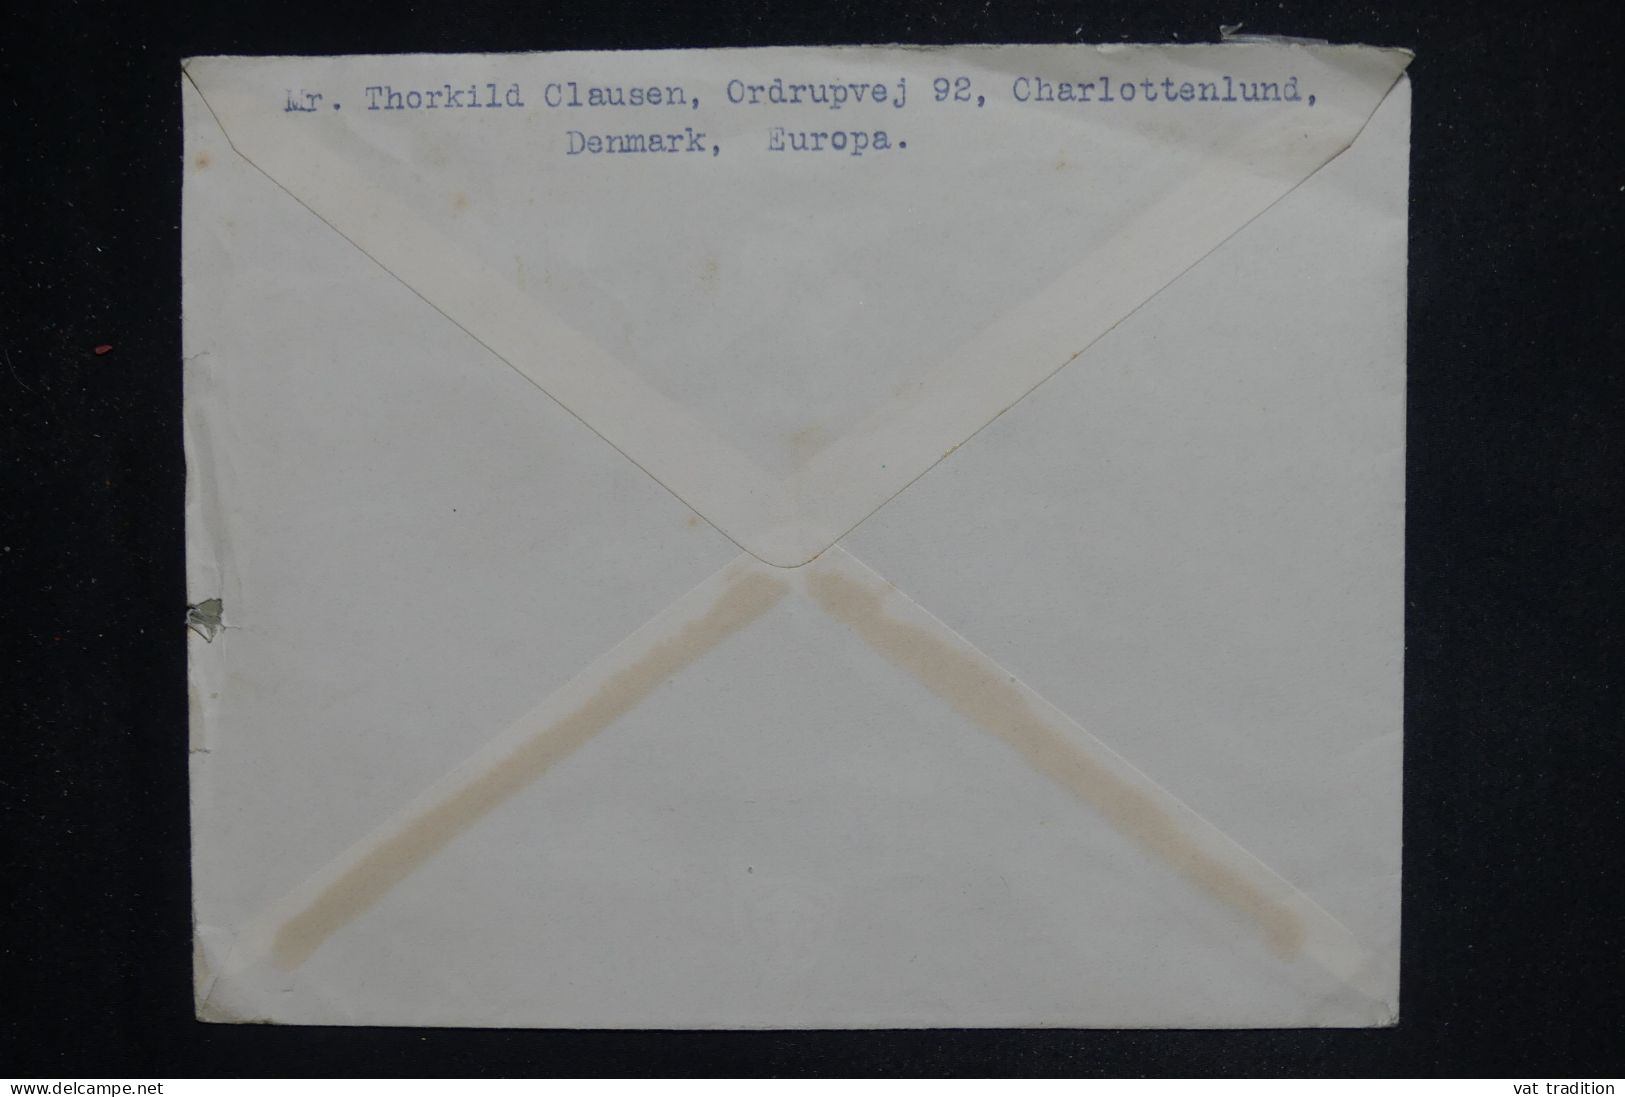 DANEMARK - Enveloppe De Copenhague Pour  La France En 1940 - L 150662 - Covers & Documents